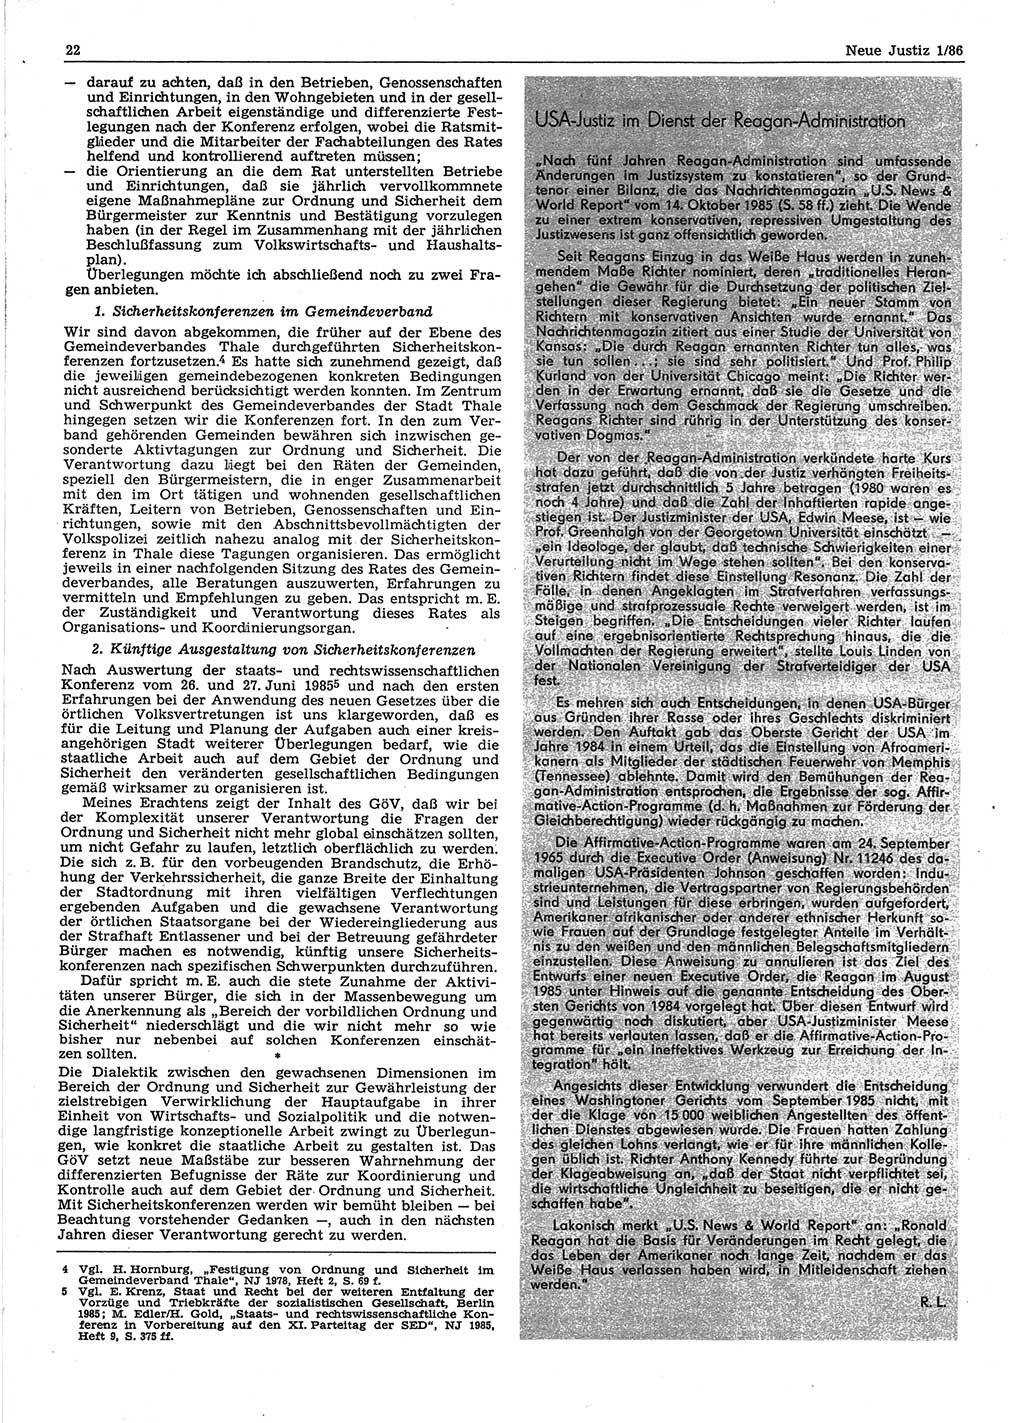 Neue Justiz (NJ), Zeitschrift für sozialistisches Recht und Gesetzlichkeit [Deutsche Demokratische Republik (DDR)], 40. Jahrgang 1986, Seite 22 (NJ DDR 1986, S. 22)